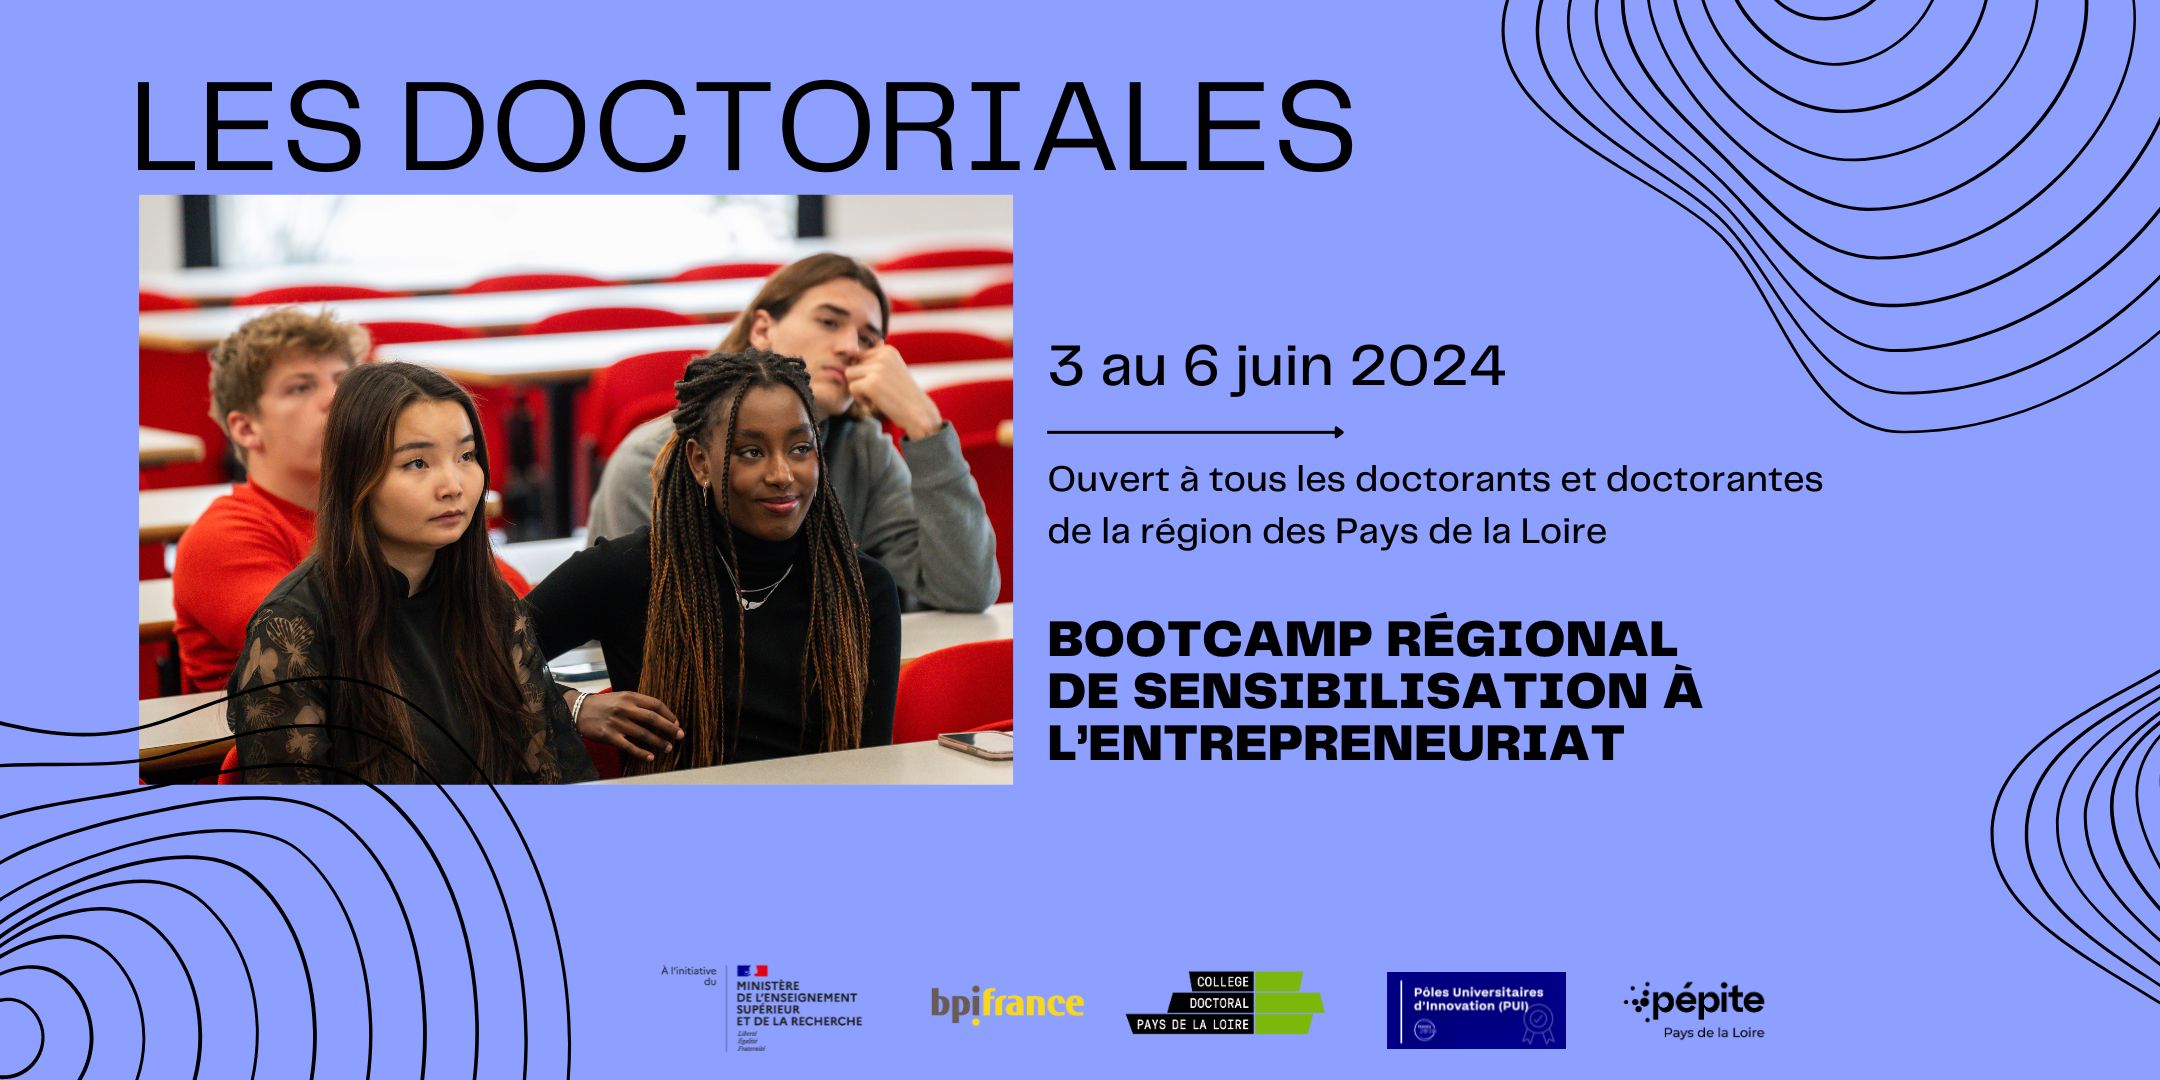 Les Doctoriales - formation transversale Pays de la Loire - édition 2024